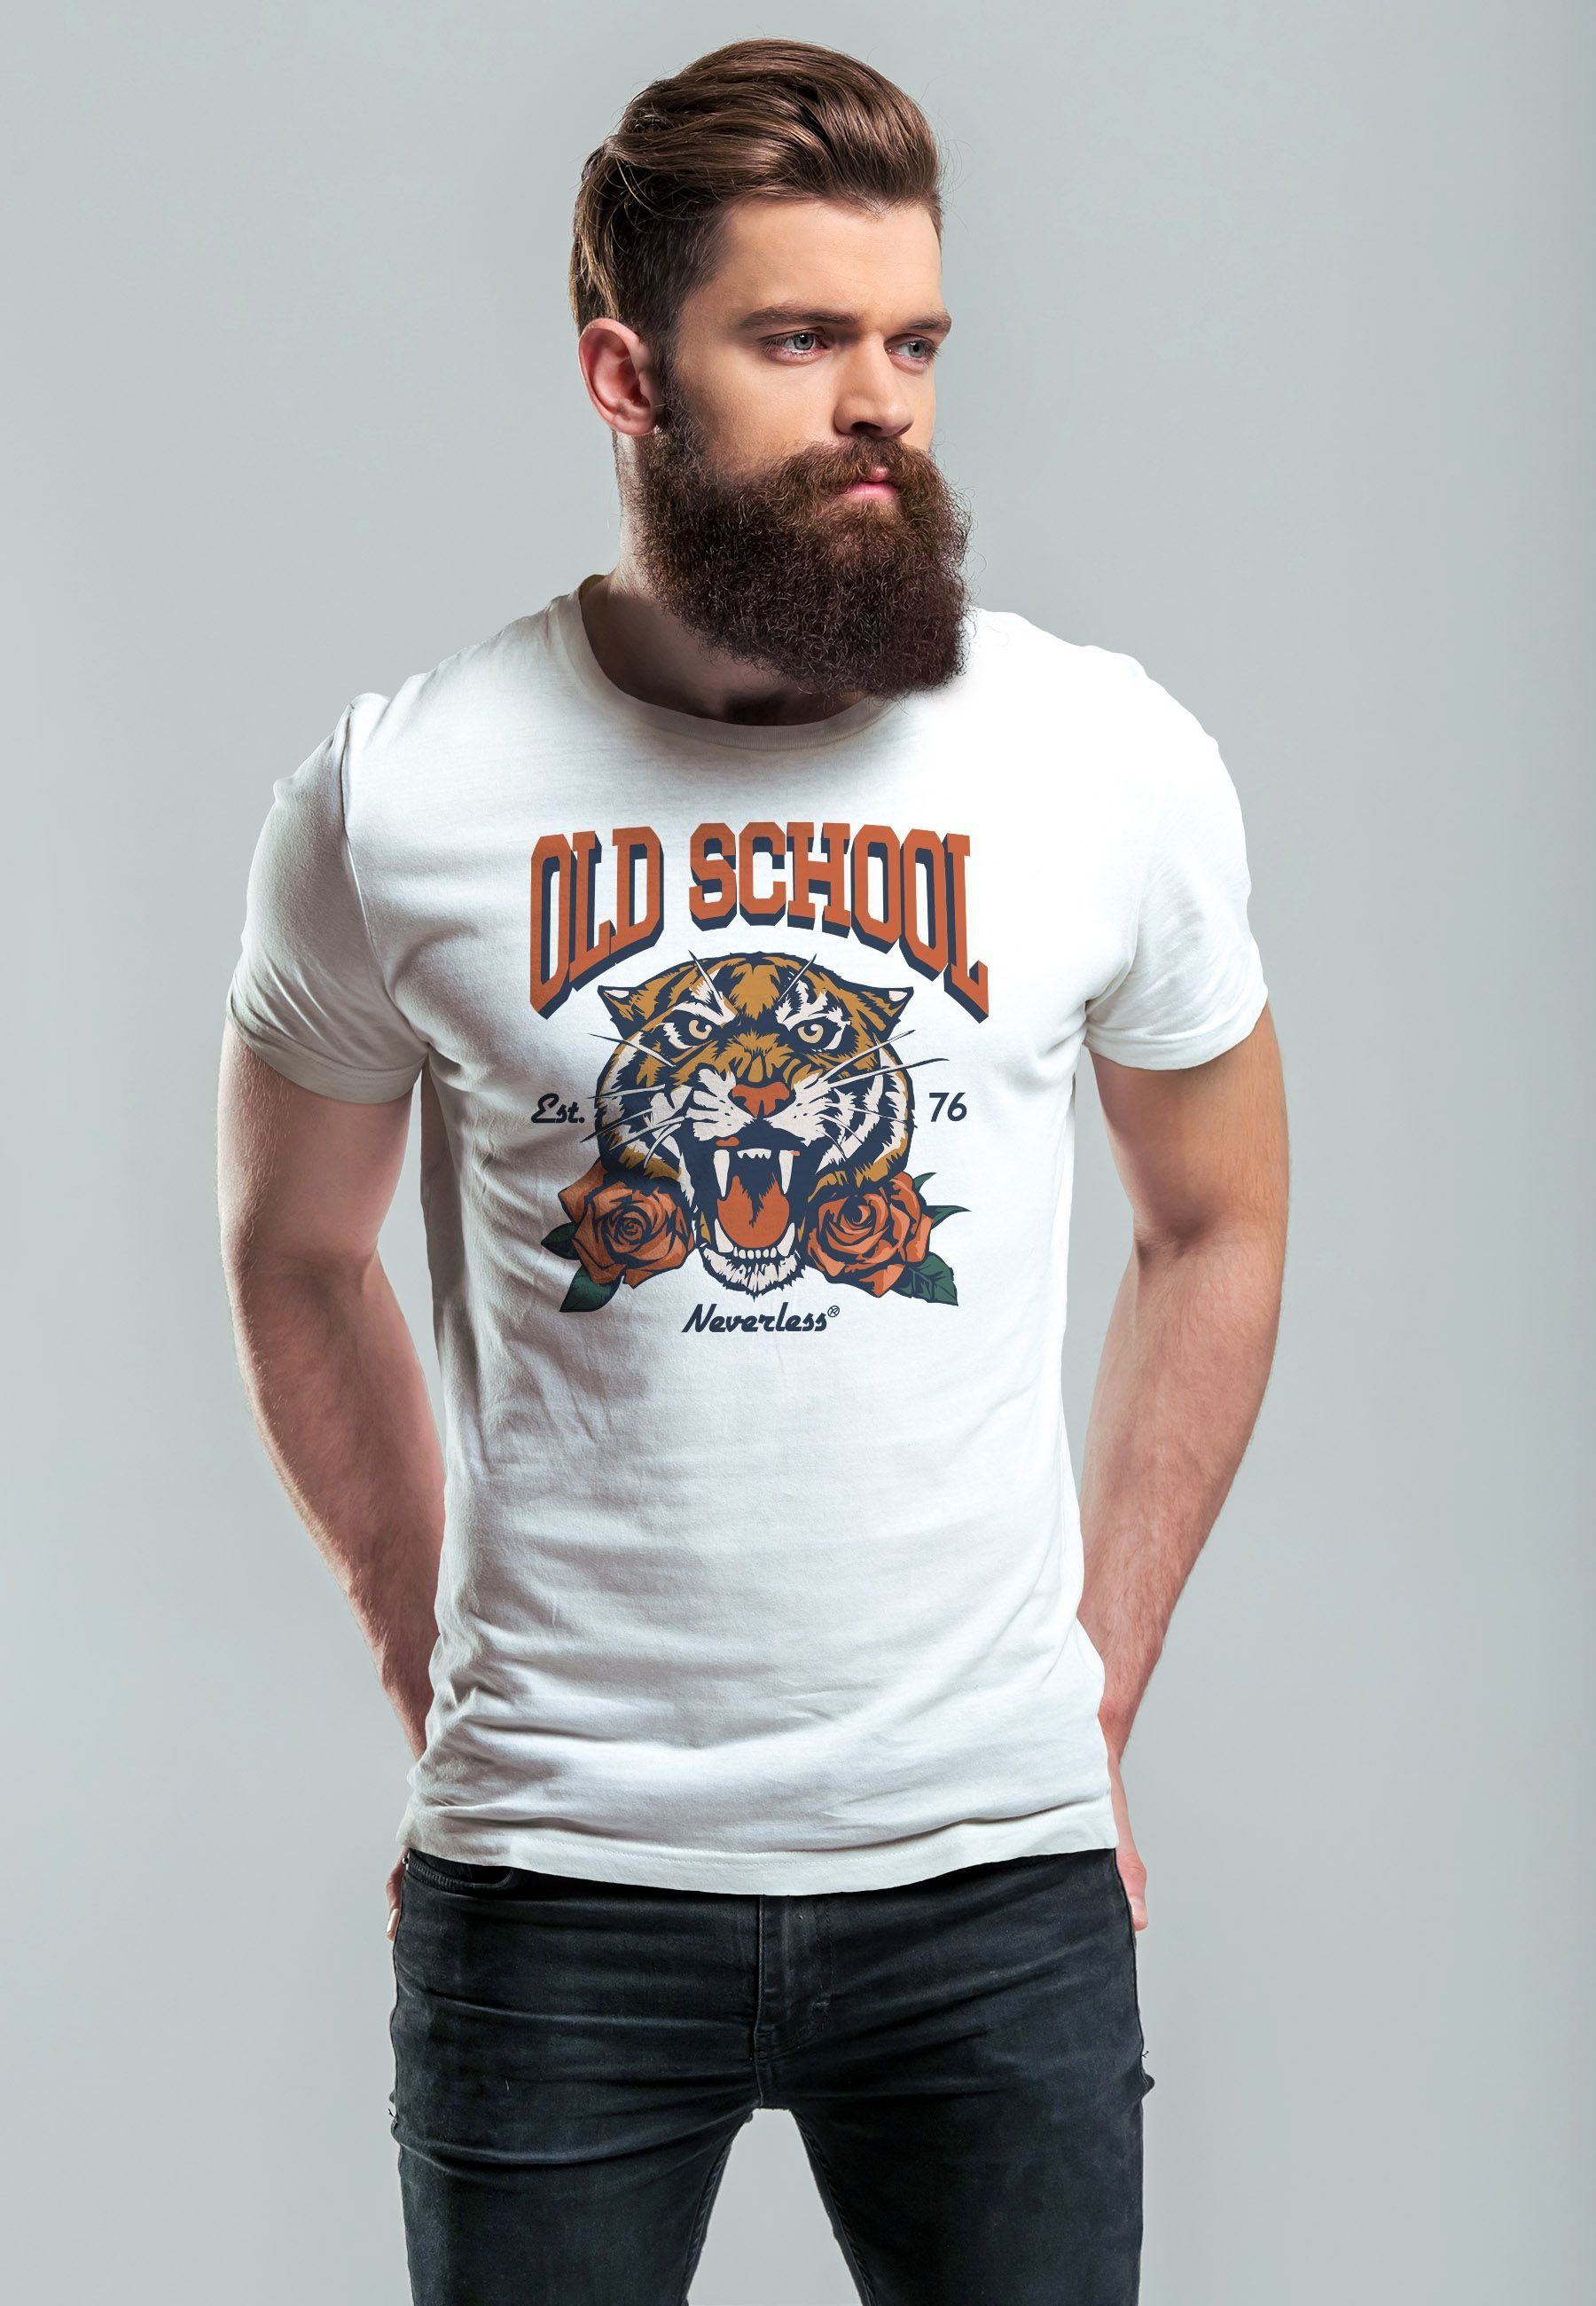 Neverless Print-Shirt Fashion Herren School Old Print weiß Print Retro Vintage Rosen Stre Tiger mit T-Shirt